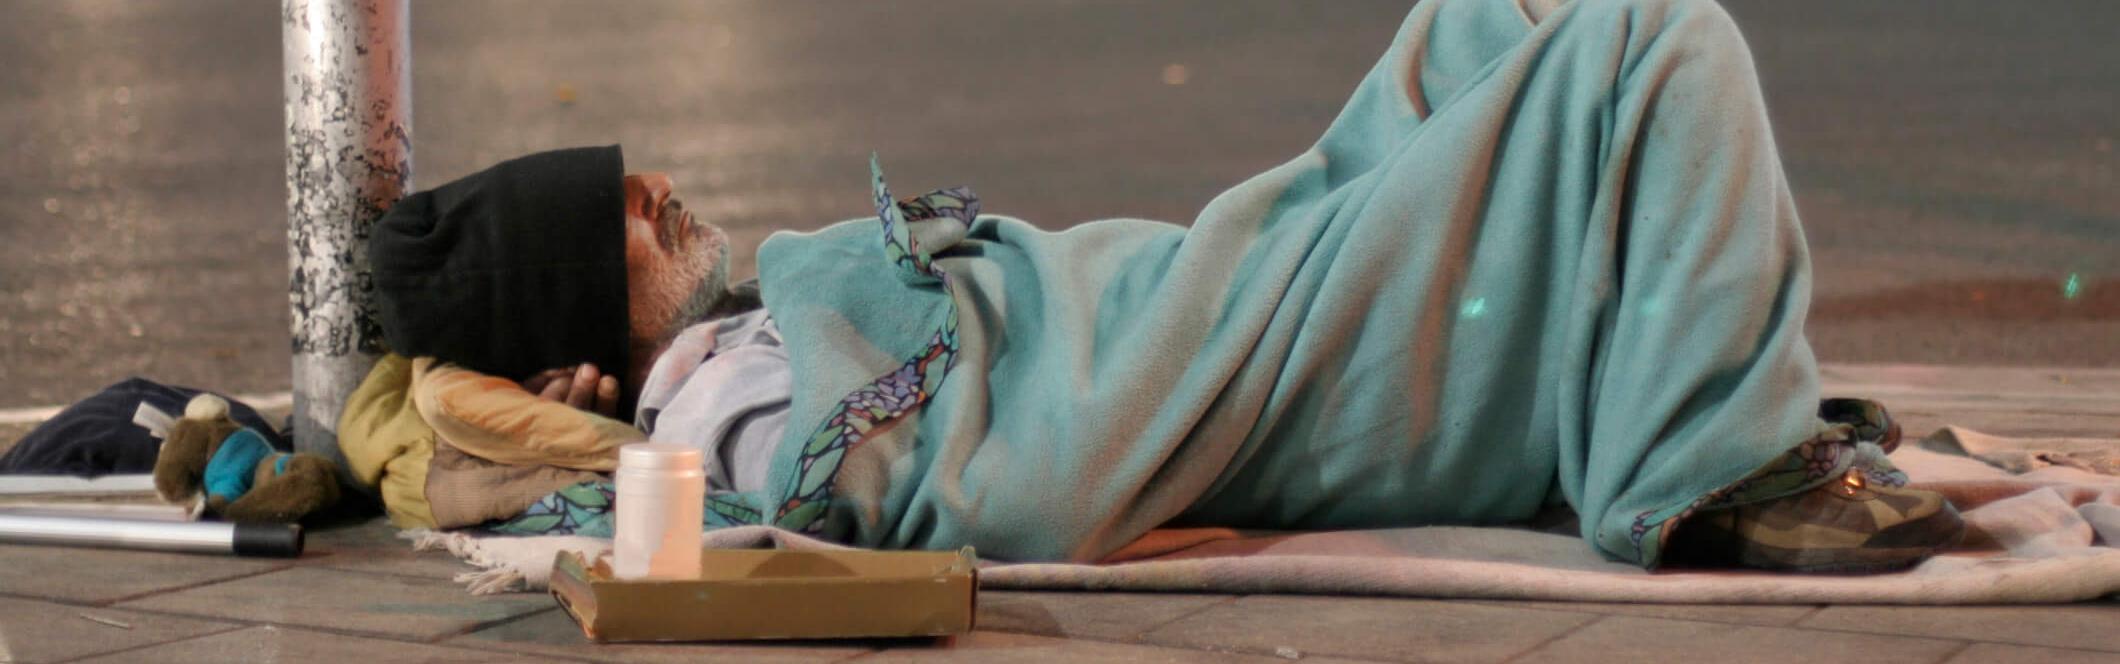 Obdachloser liegt auf dem Bürgersteig